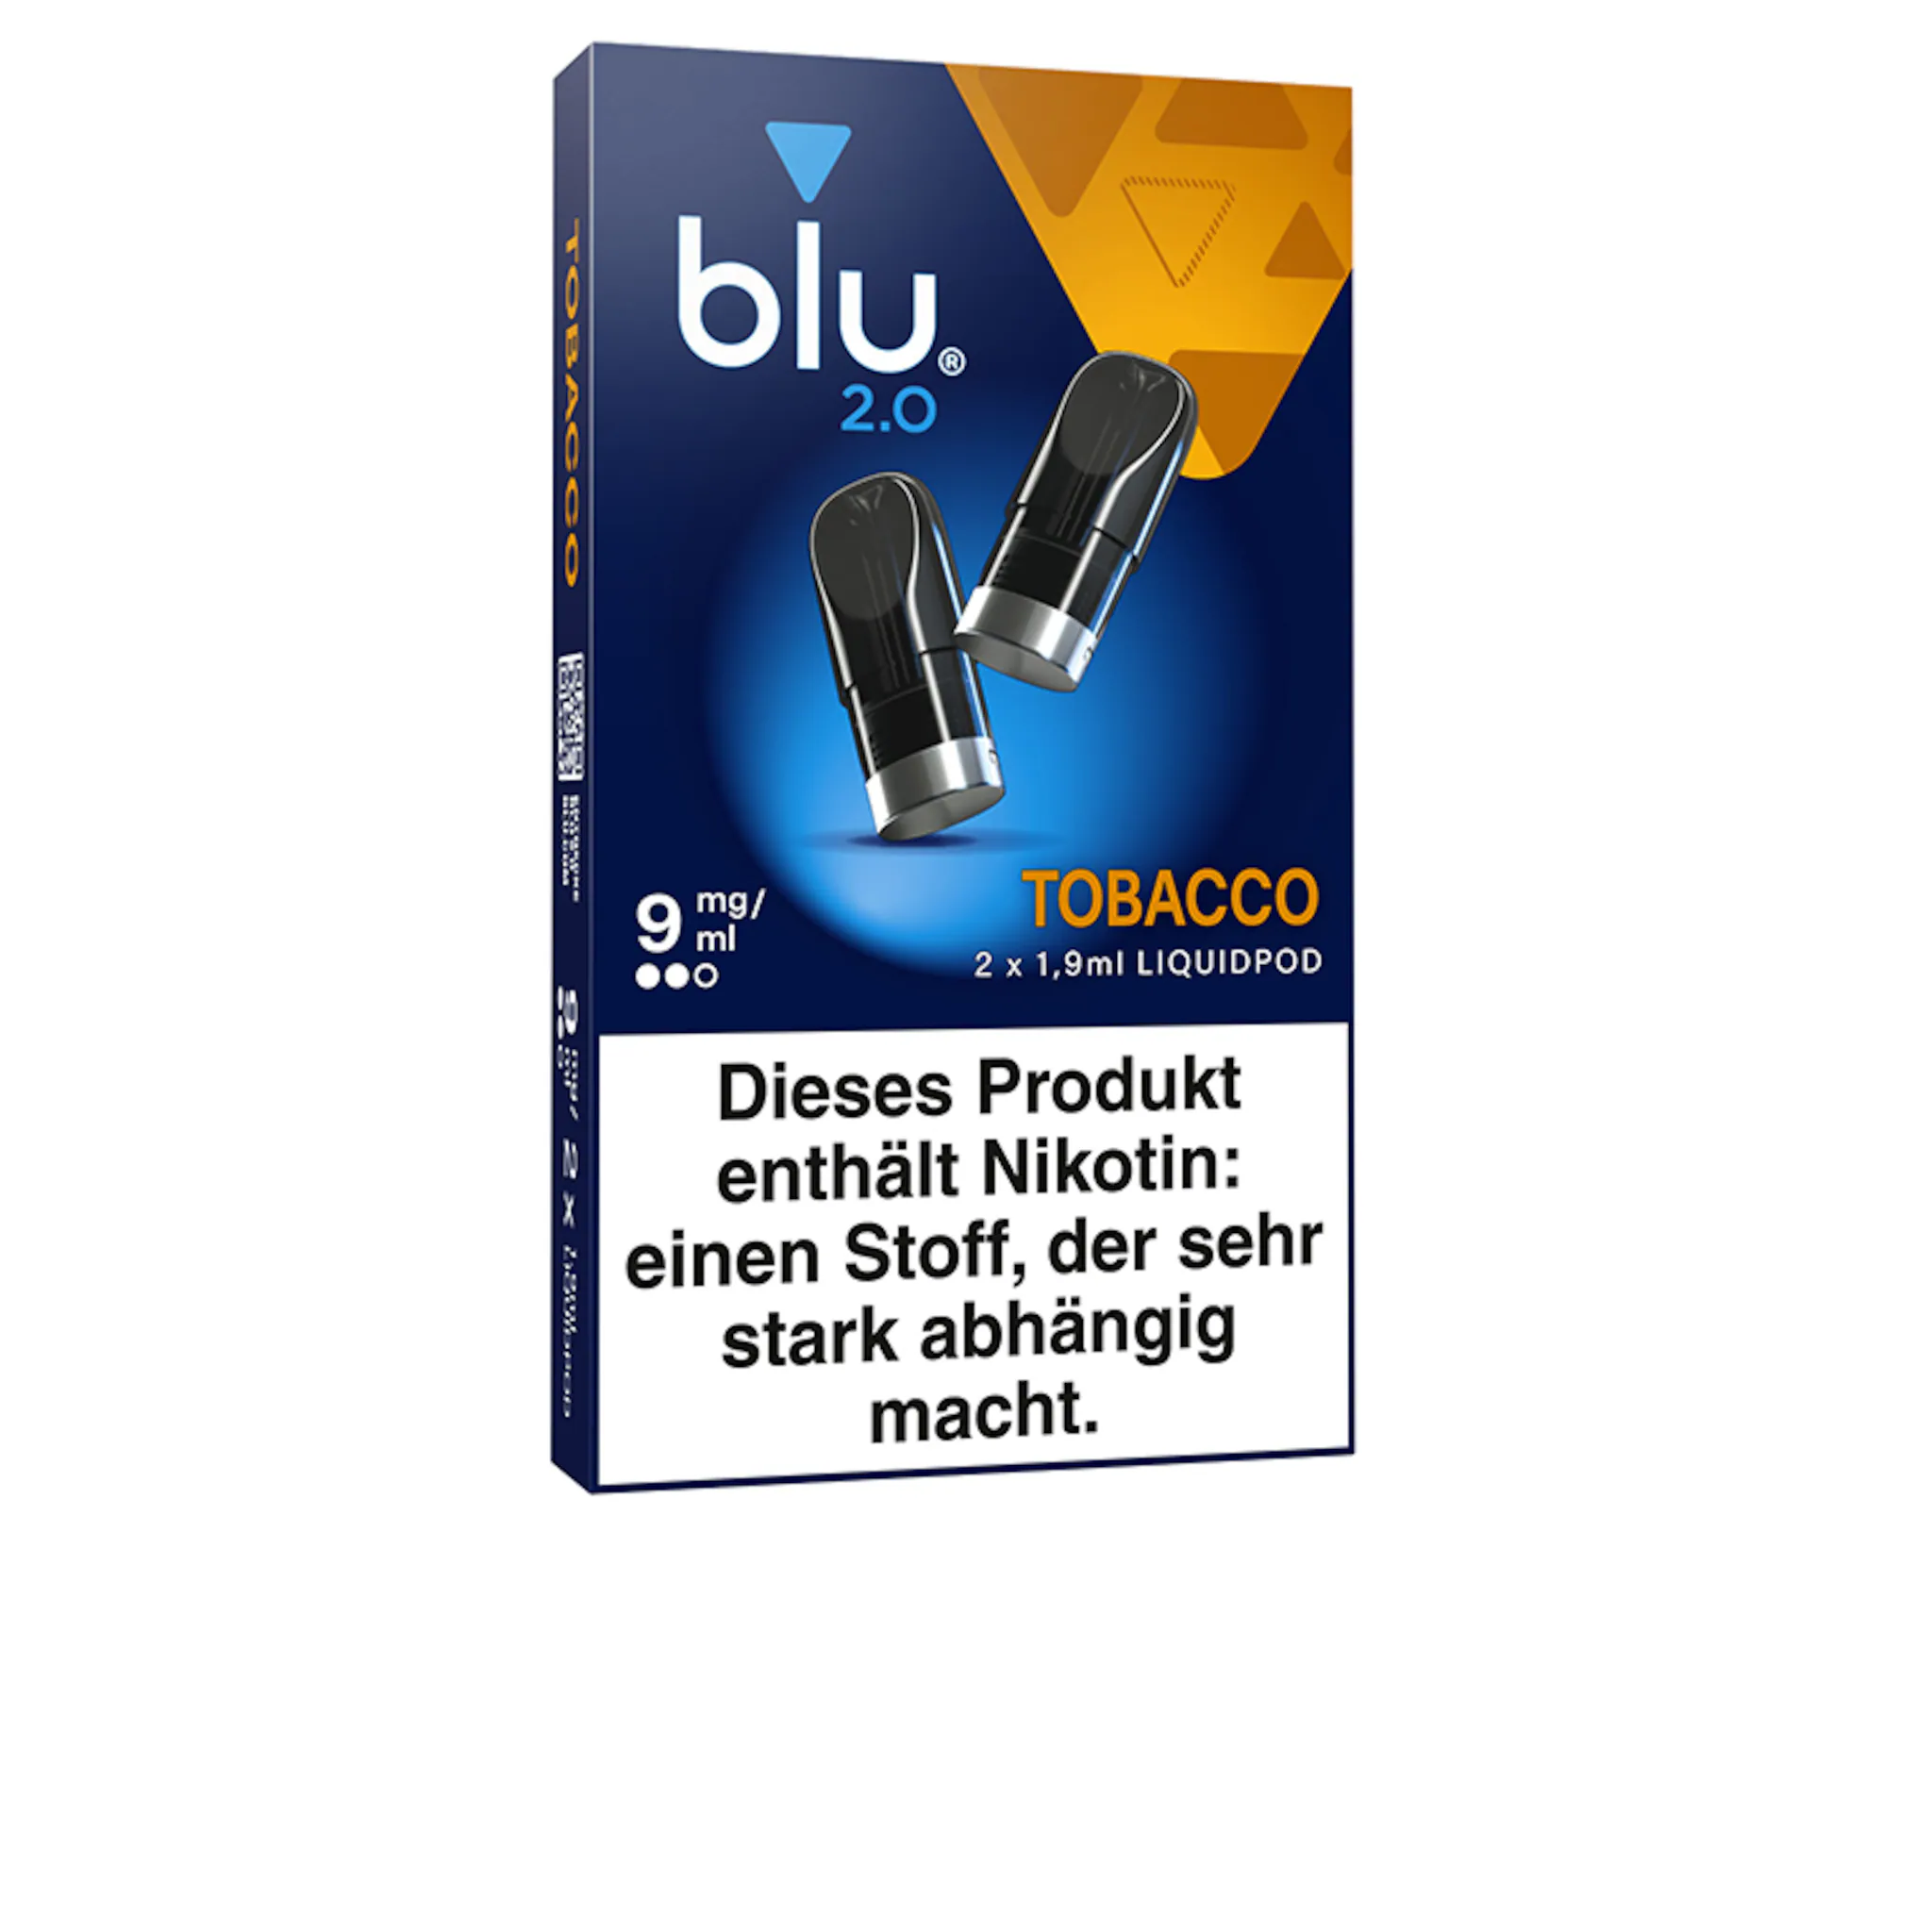 Blu 2.0 - Tobacco